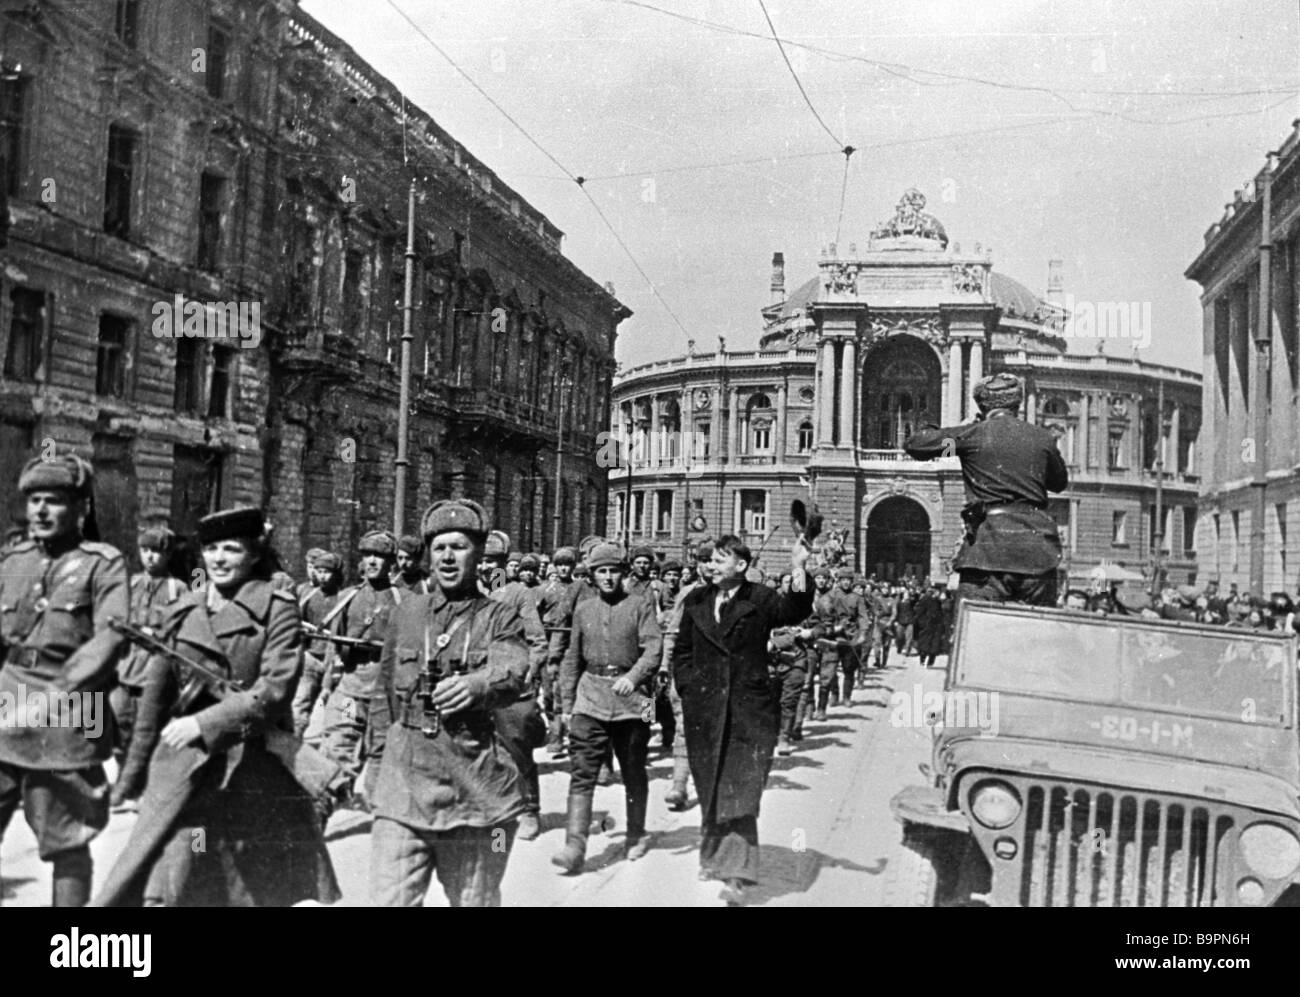 2 апреля 1944 года. Одесса 10 апреля 1944 года. Освобождение Одессы 1941. День освобождения Одессы от румынско-немецких войск 1944г.. Одесса в Великую отечественную войну освобождение.